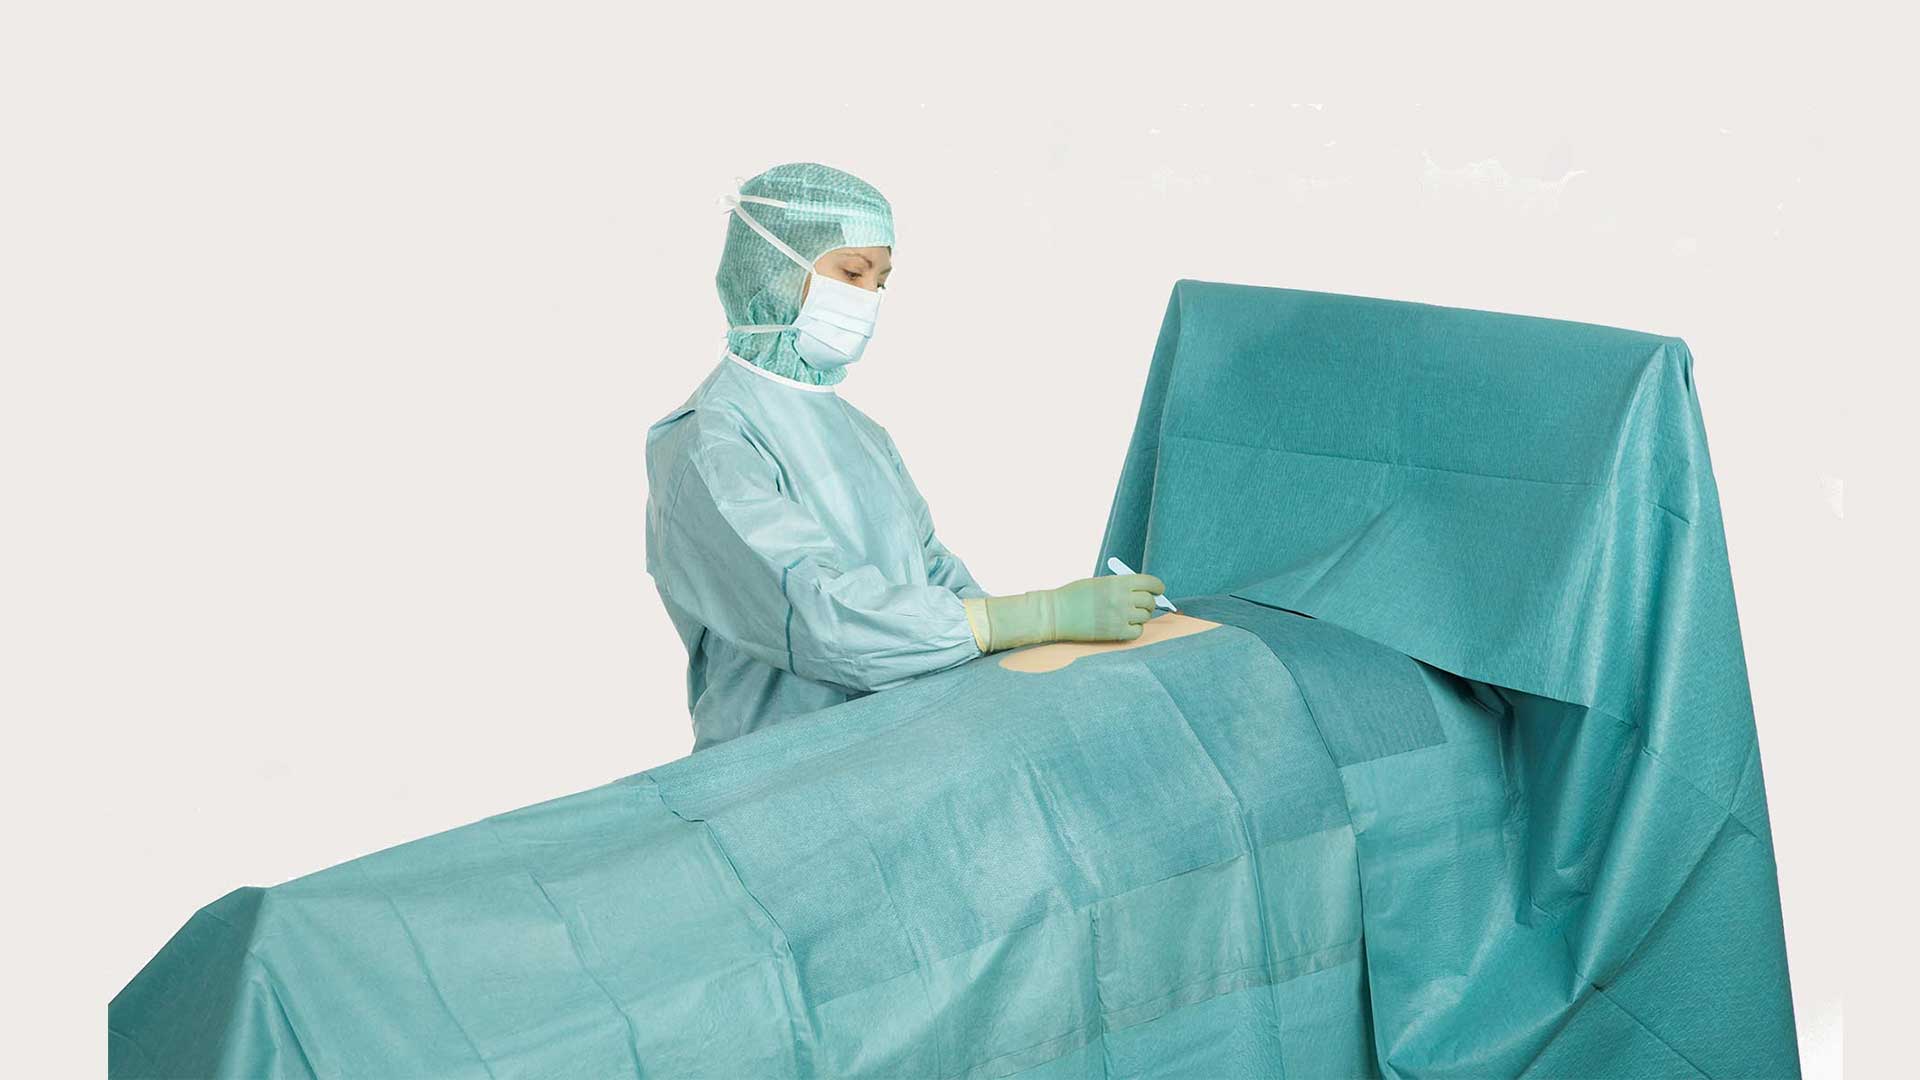 BARRIER általános hasi műtétekhez tervezett lepedőt használó sebész műtét közben